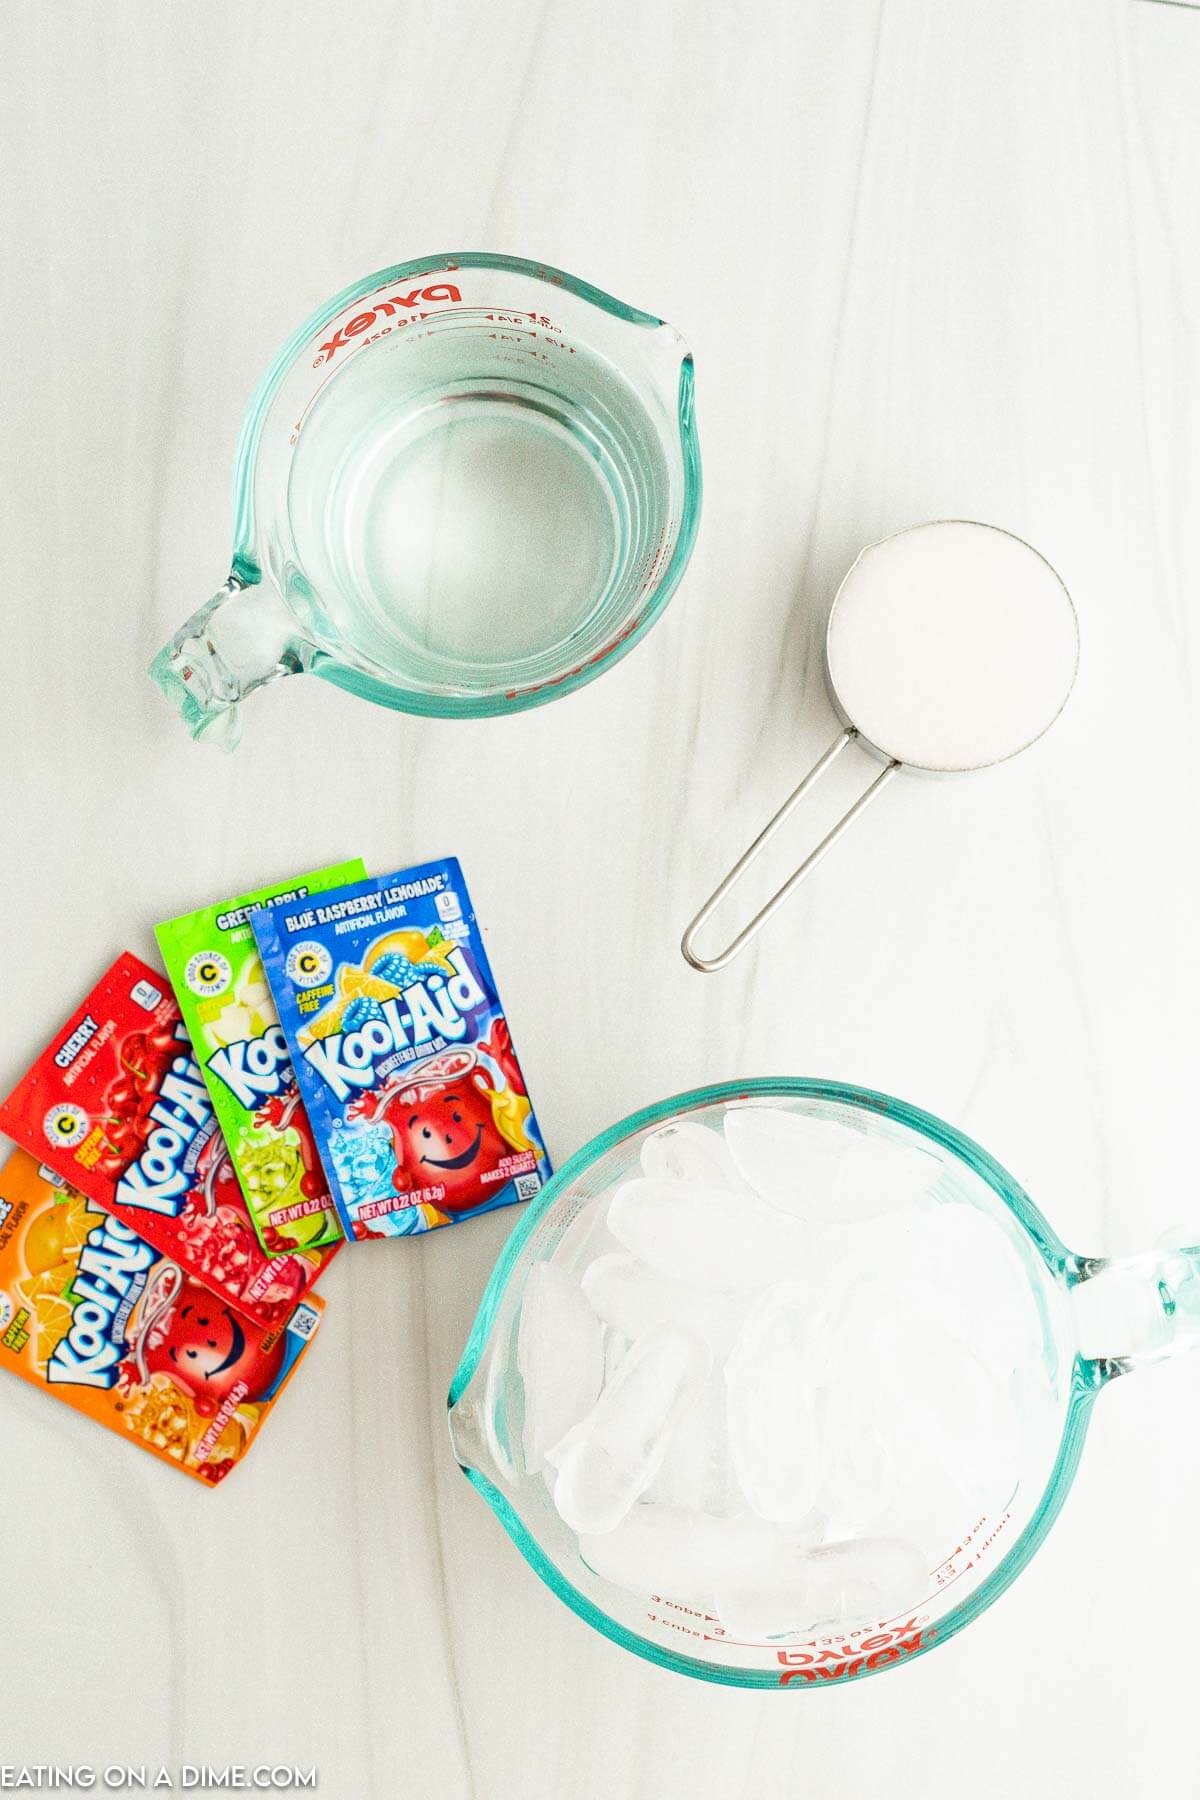 Ingredients needed - water, ice, sugar, kool aid packets